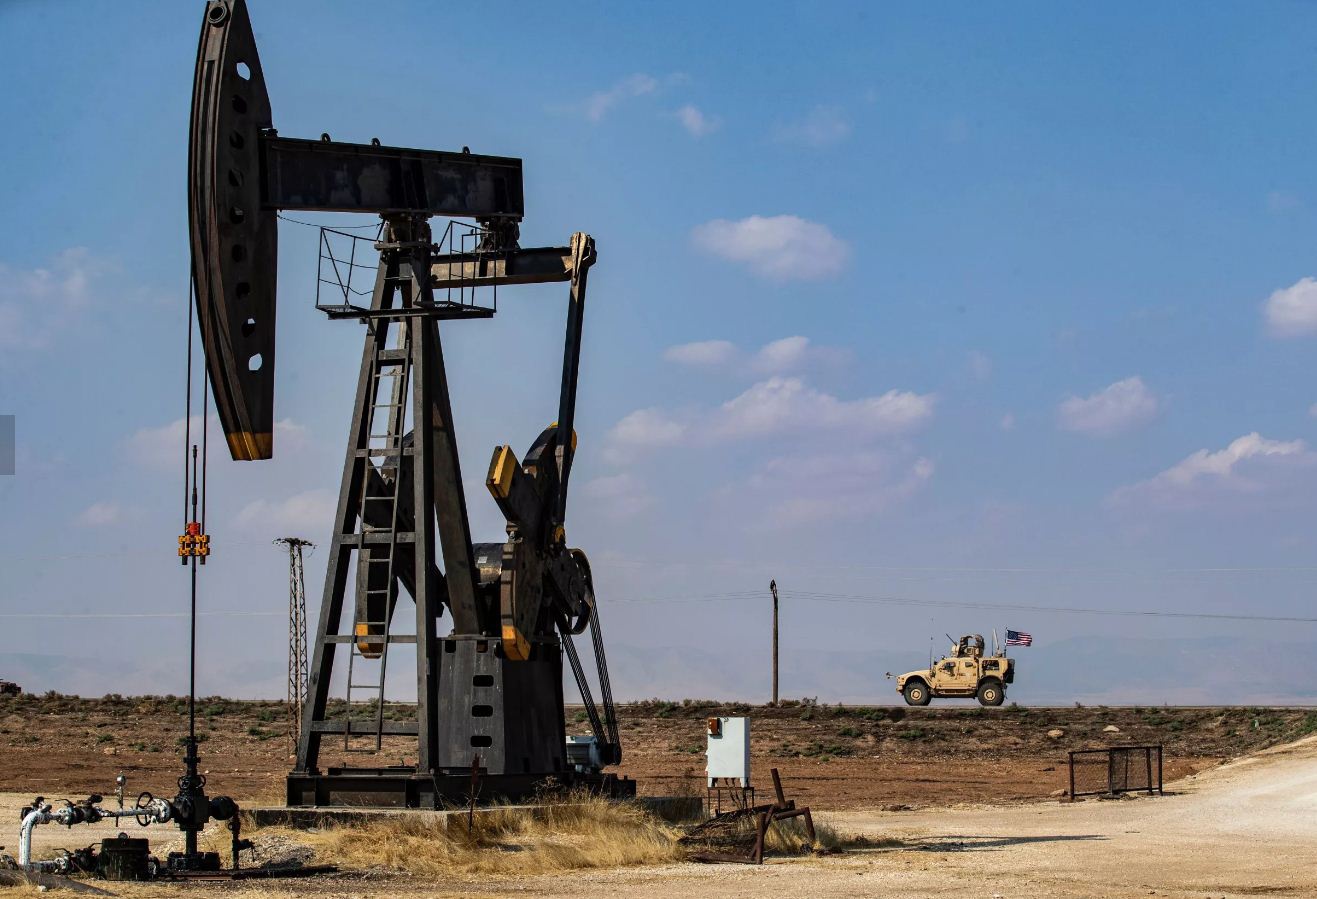 درخواست کردها از آمریکا برای حضور شرکت های نفتی در شمال شرق سوریه